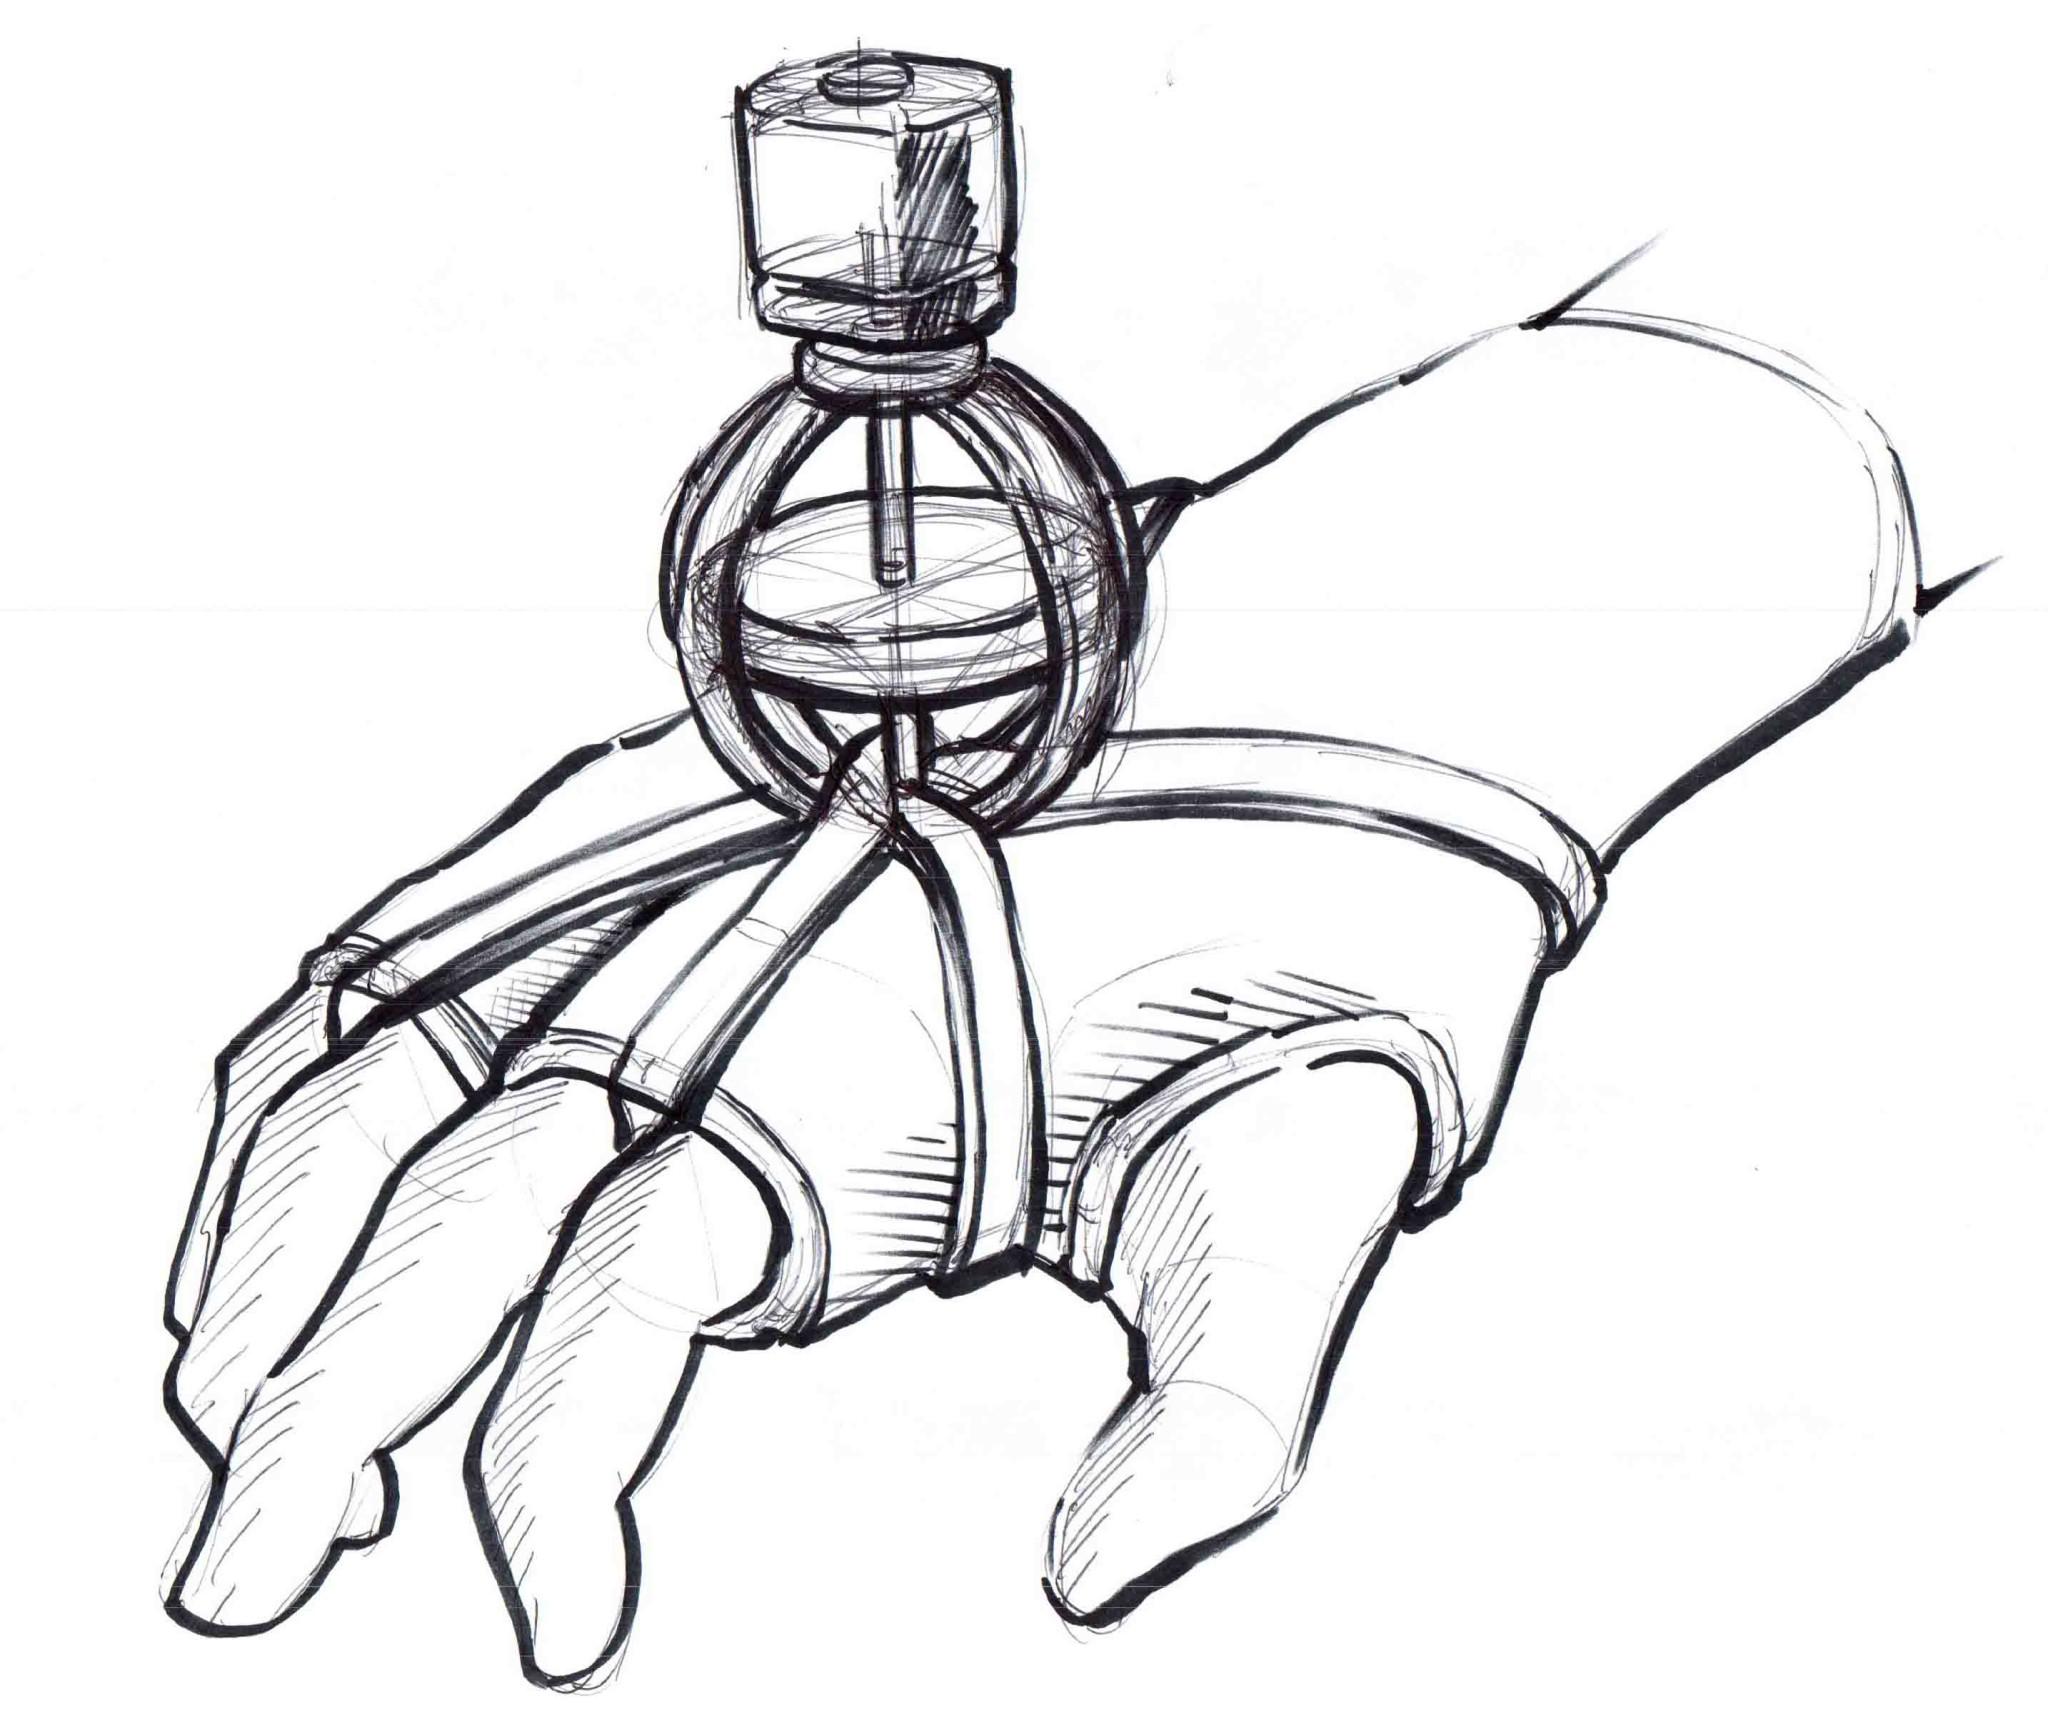 Антипаркинсоническая перчатка с гироскопом поступит в продажу в 2016 году